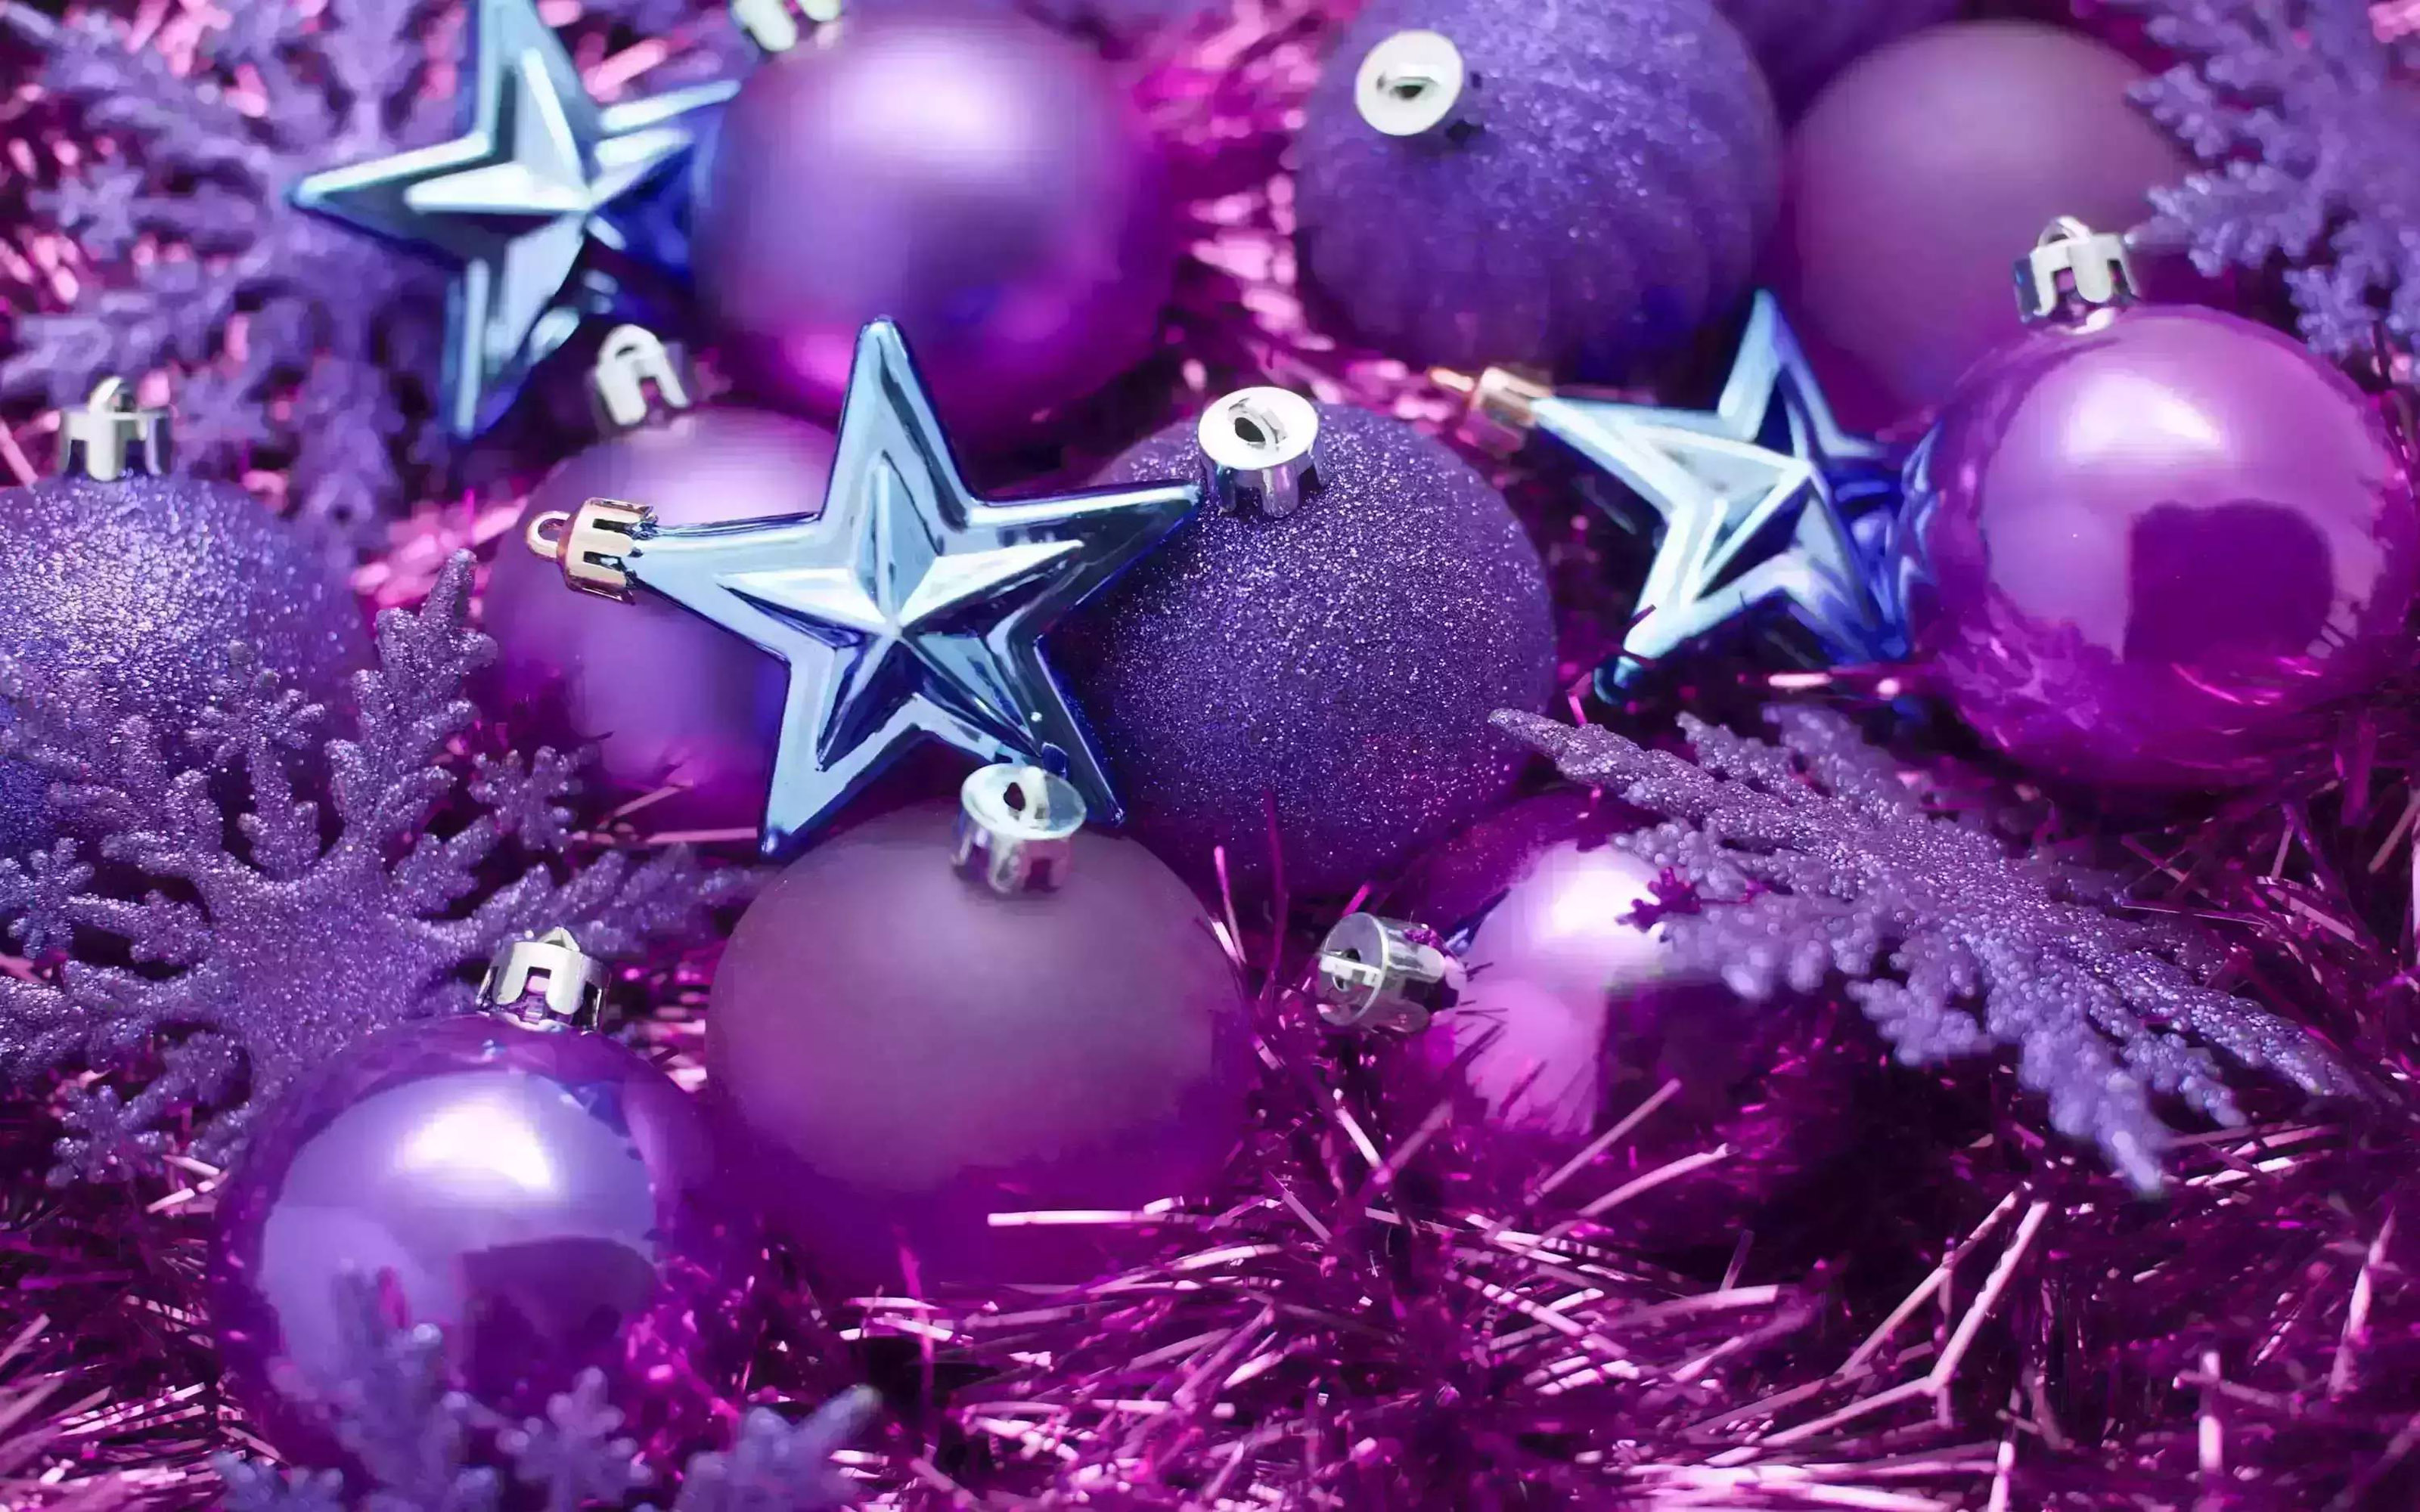 Обои на рабочий экран новый год. Фиолетовая елка. Фиолетовые шары на елку. Елка с фиолетовыми шариками. Ёлочные игрушки в фиолетовый тонах.